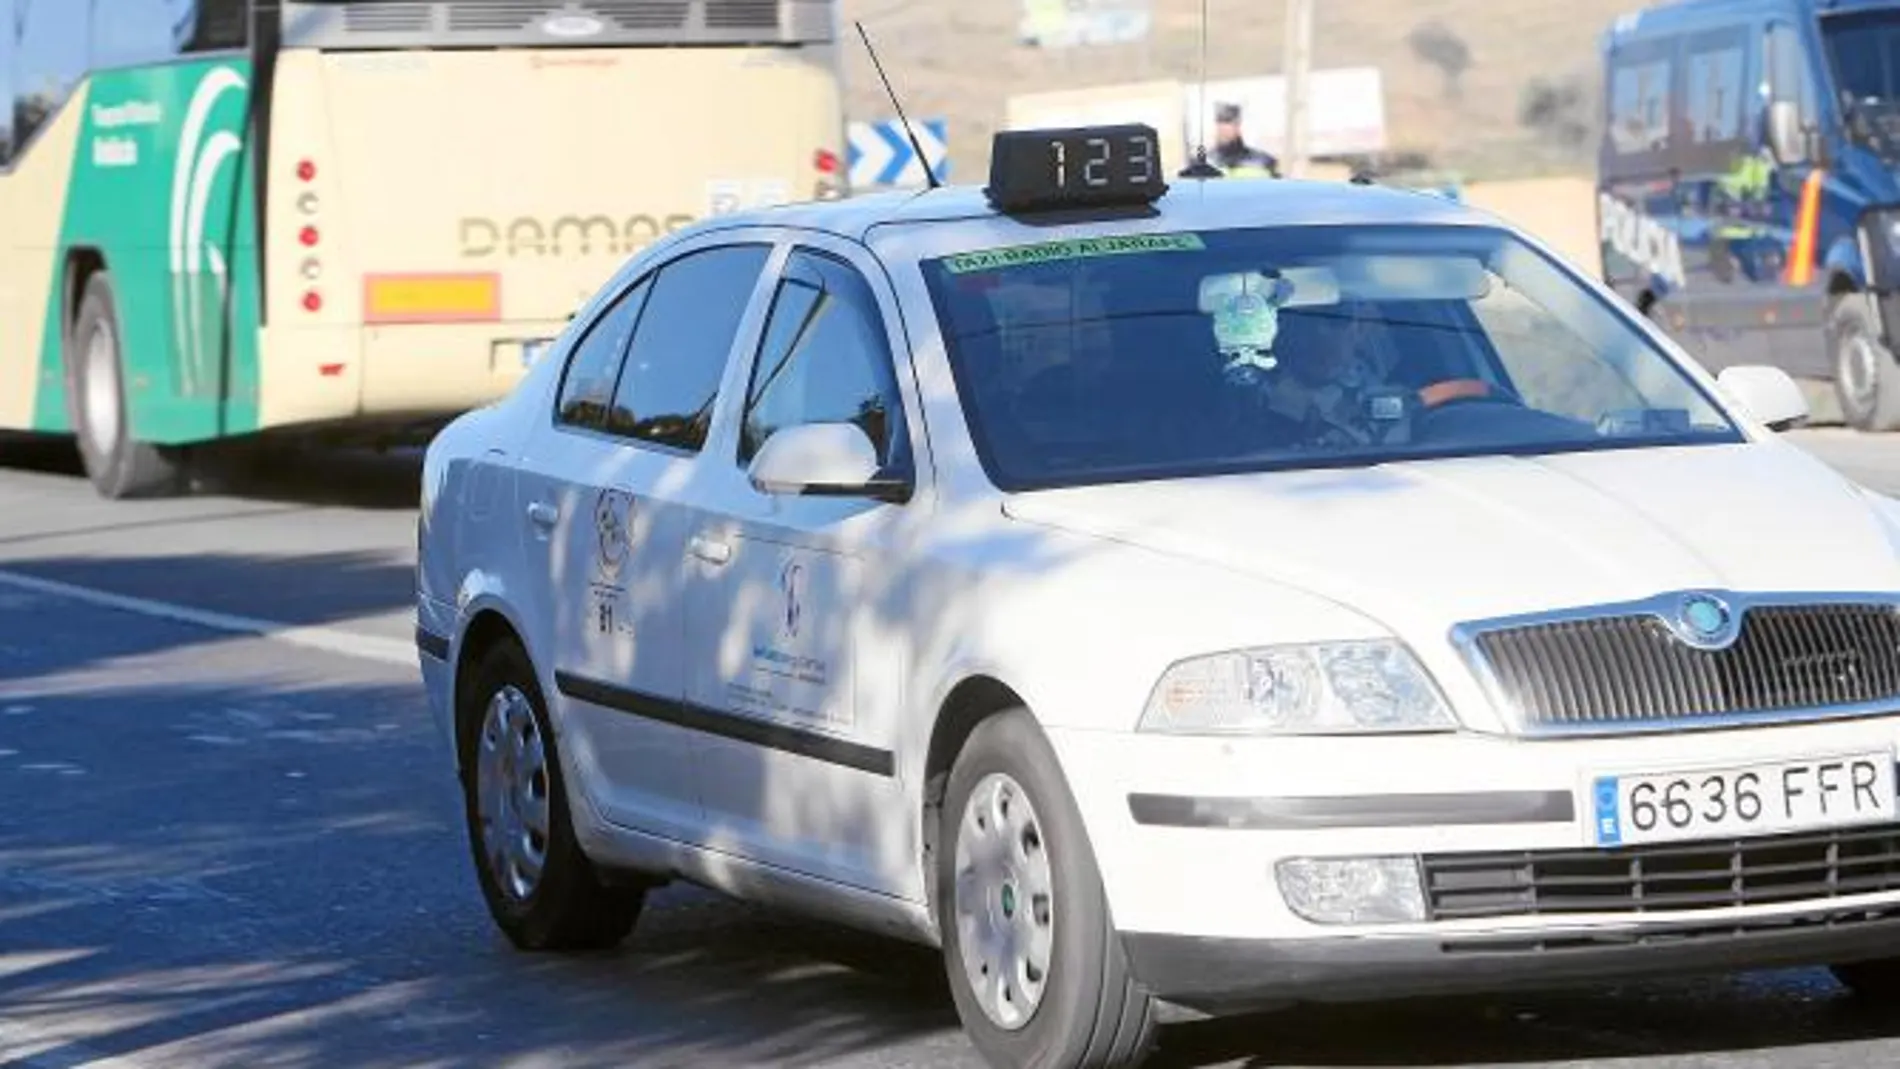 Los taxistas pedirán indemnizaciones ante el fiasco del área del Aljarafe